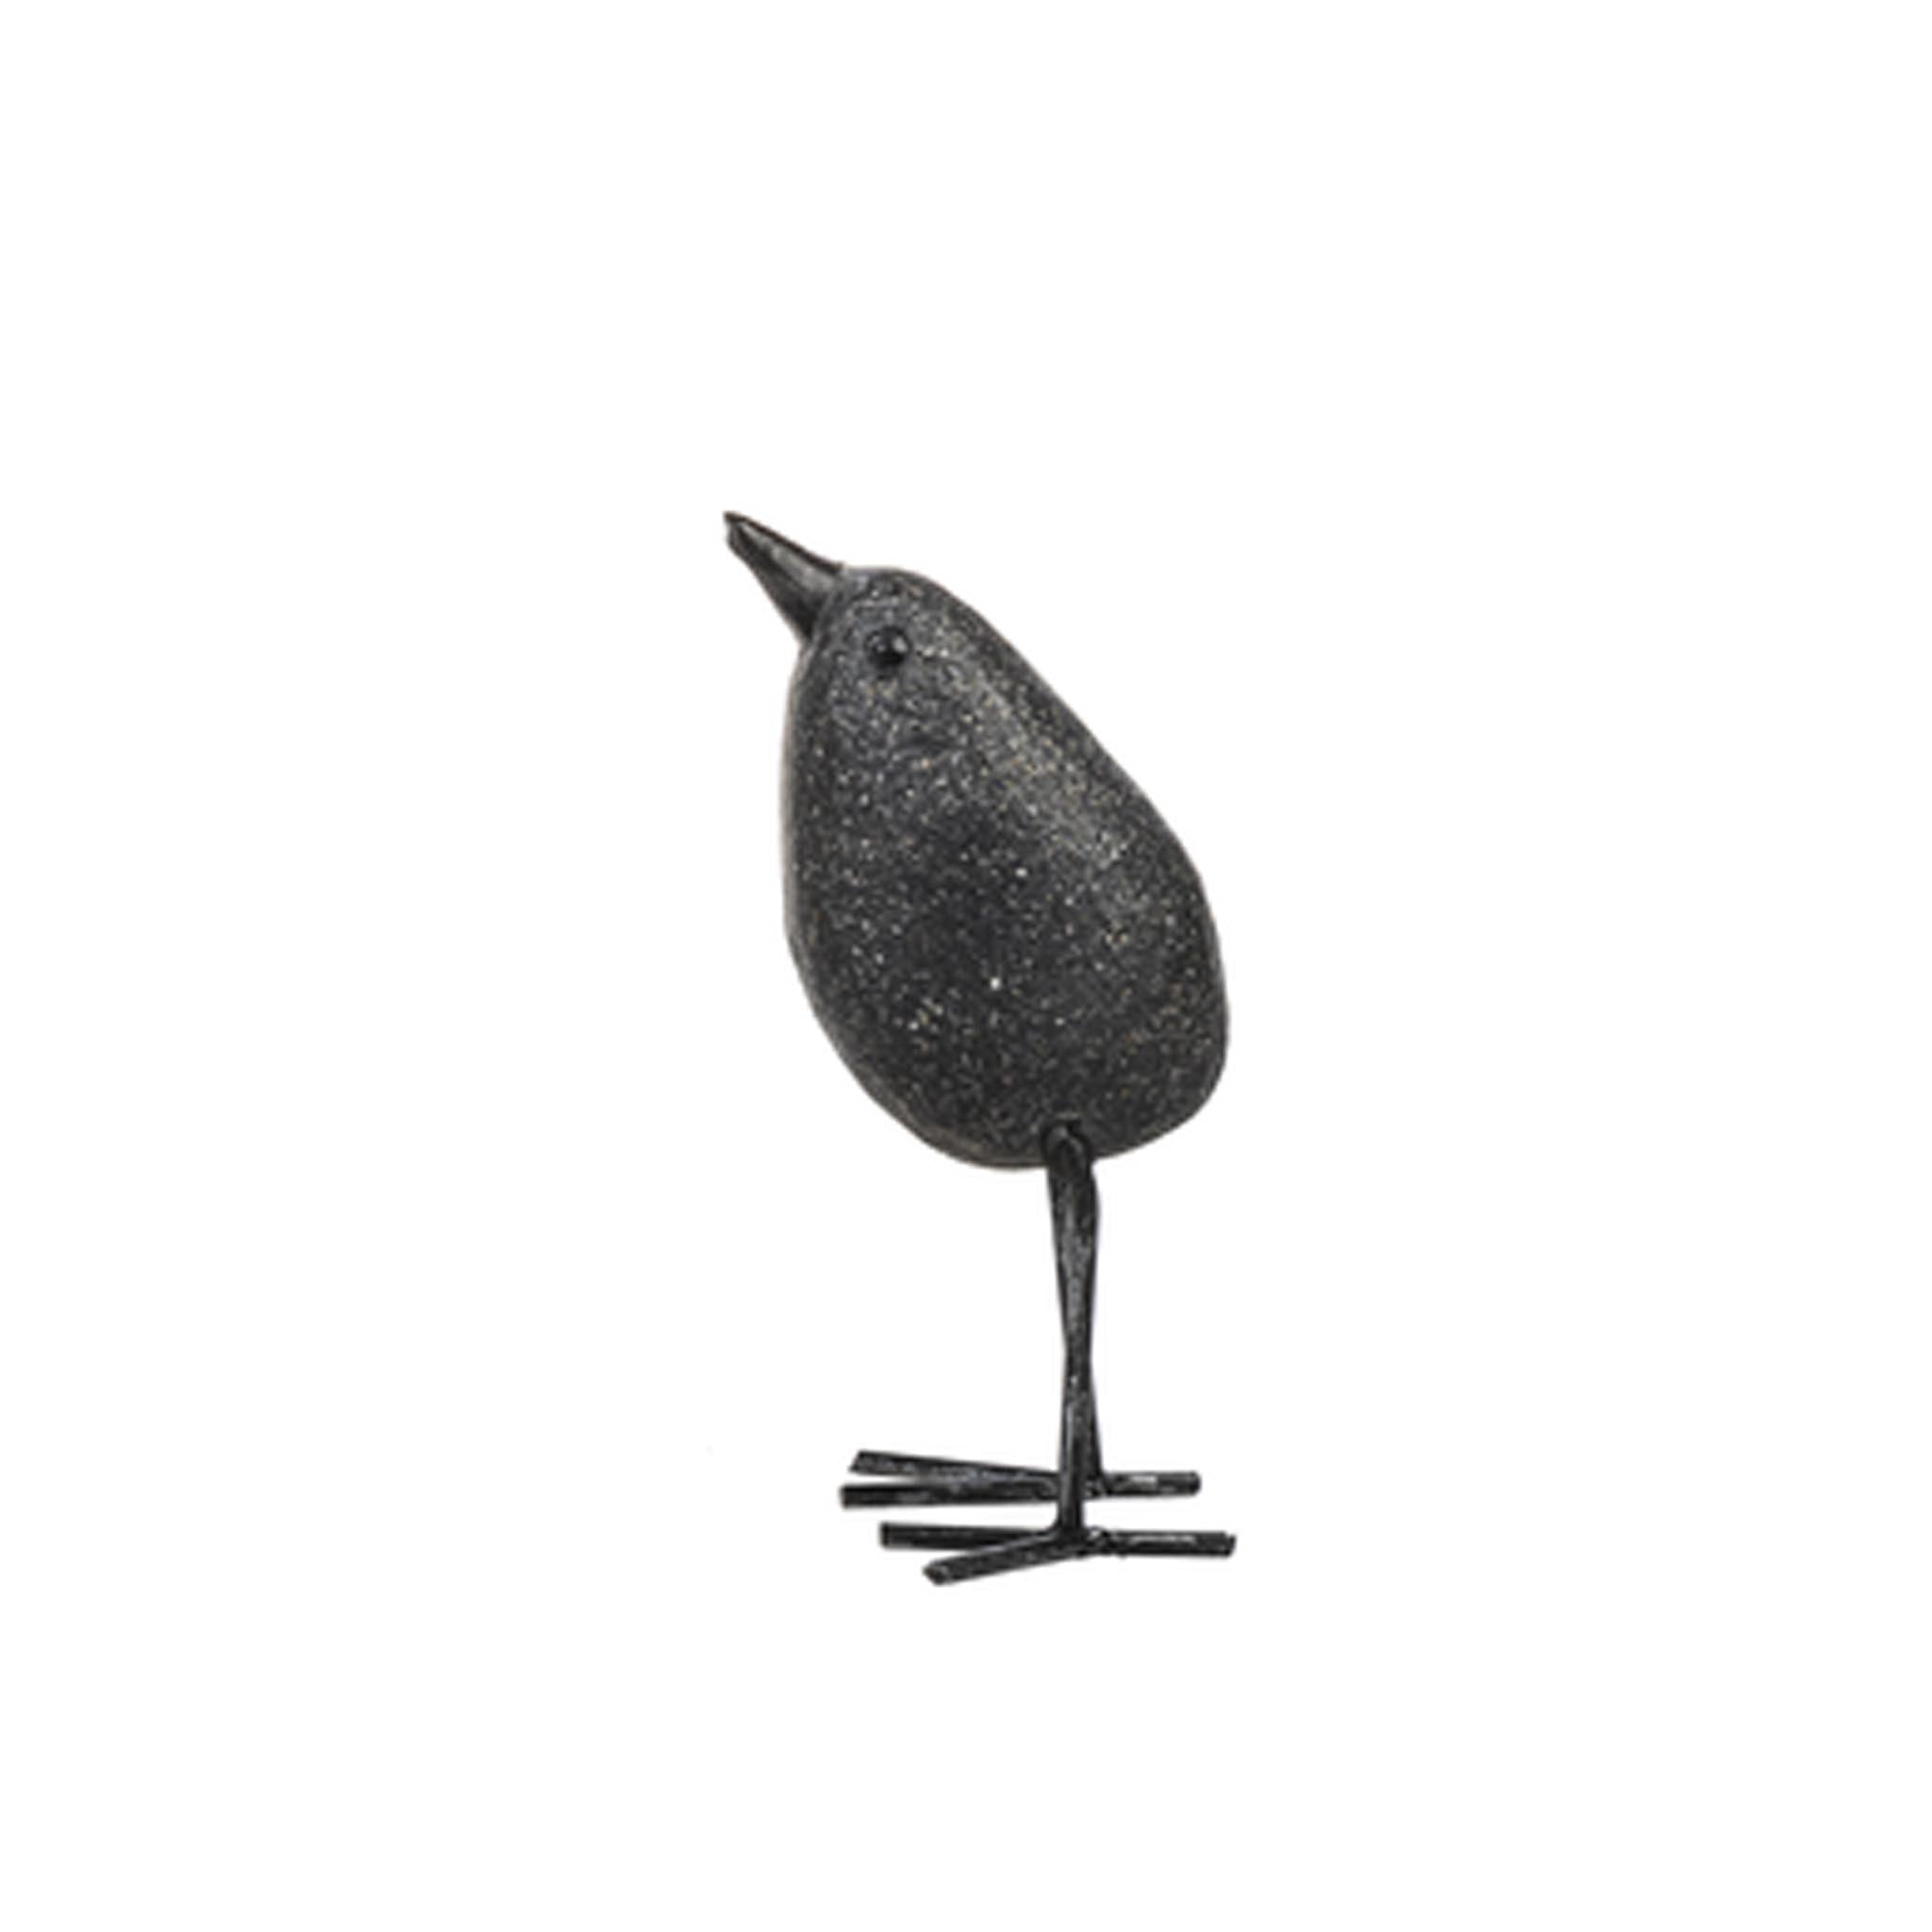 Pebble Bird Figures - Standing